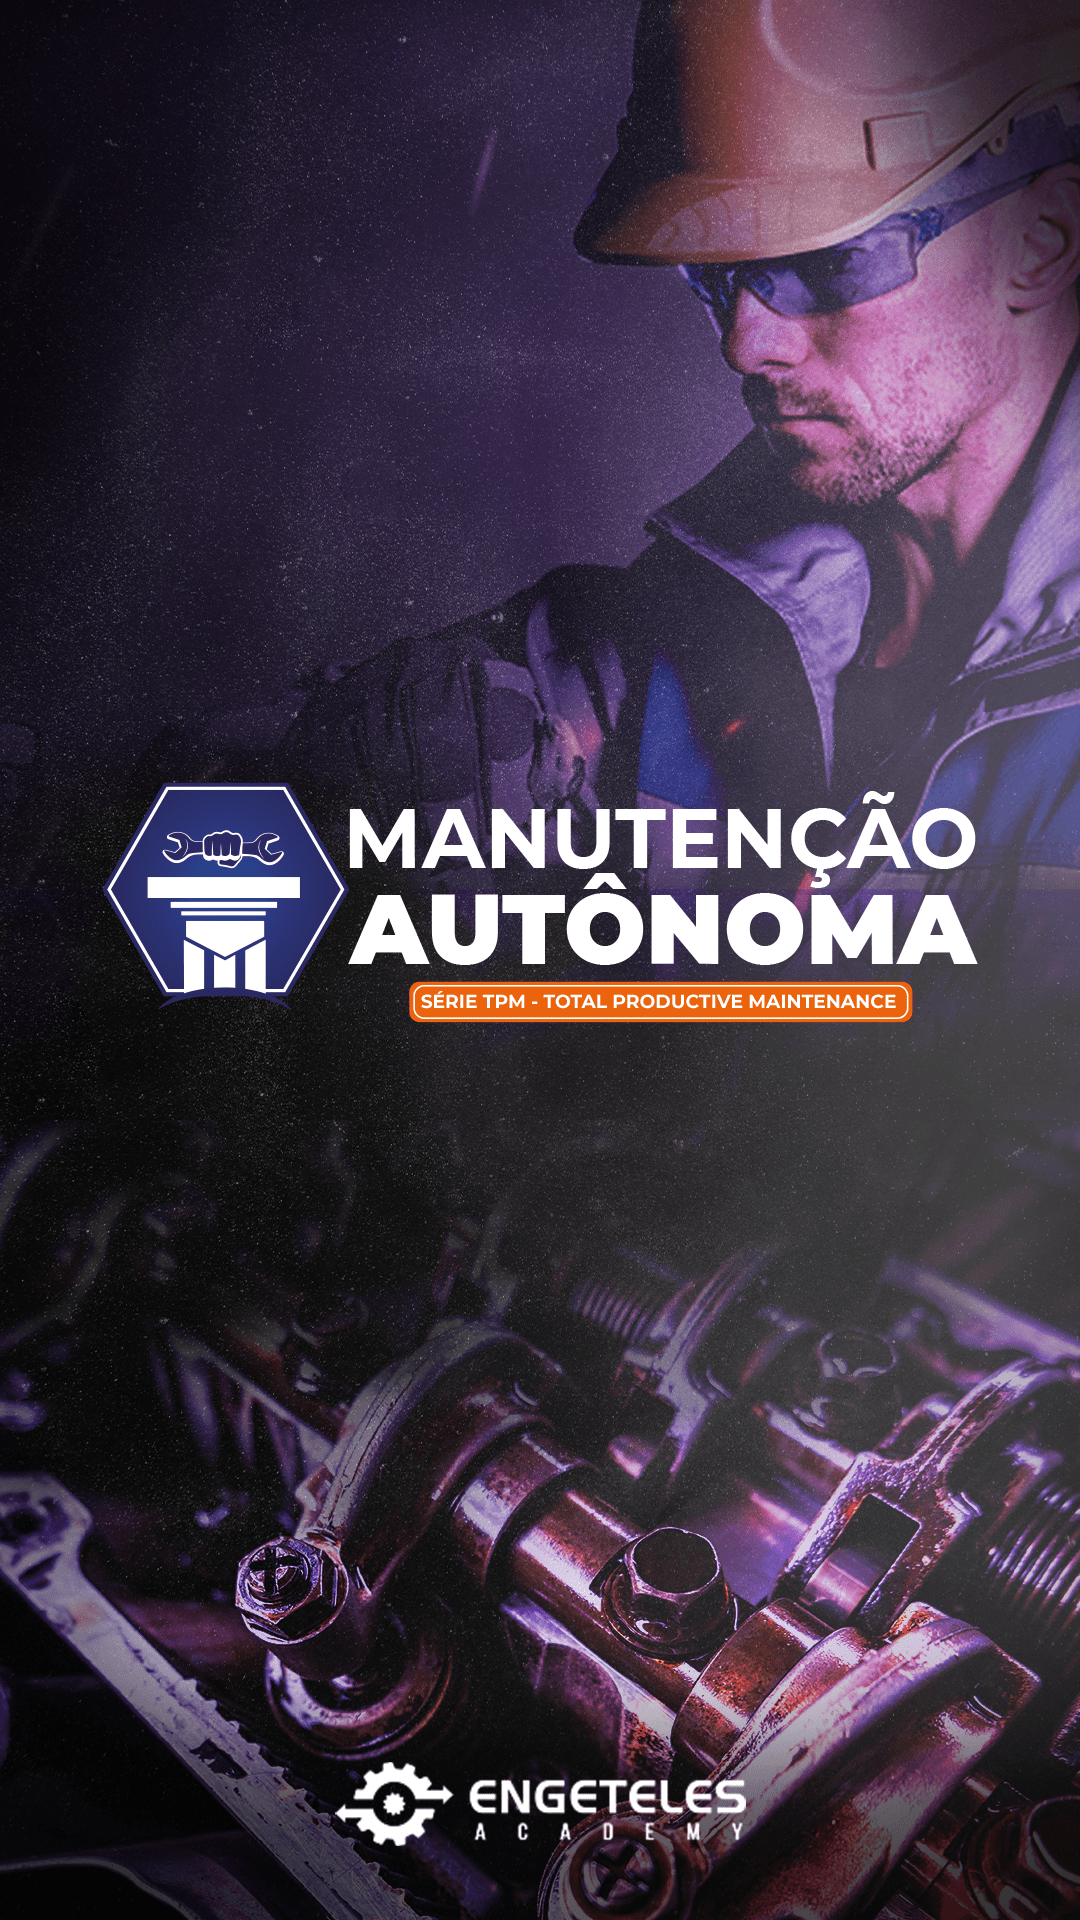 capa_manutenção_autonoma_academy